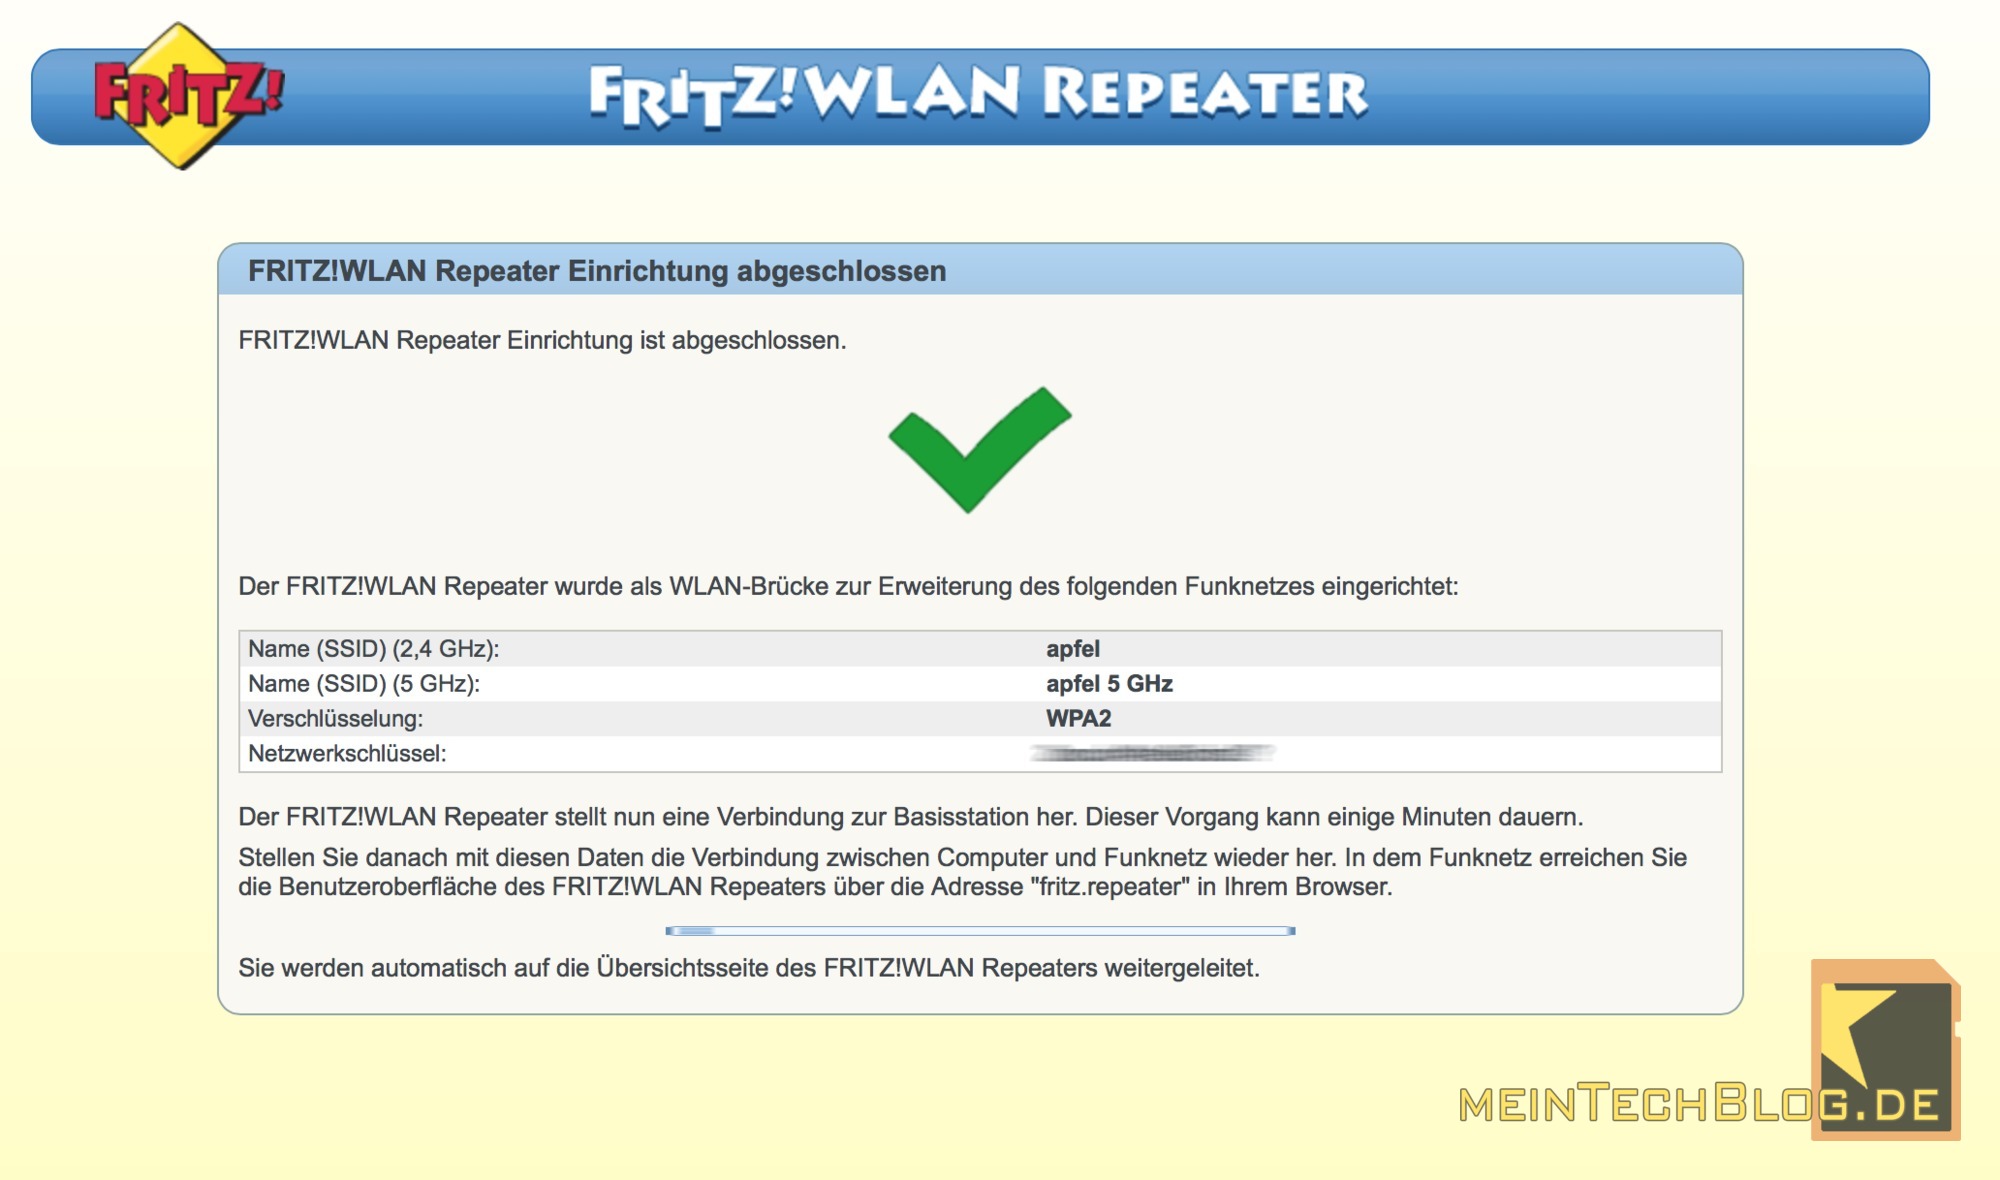 FritzWLAN Repeater Einrichtung abgeschlossen